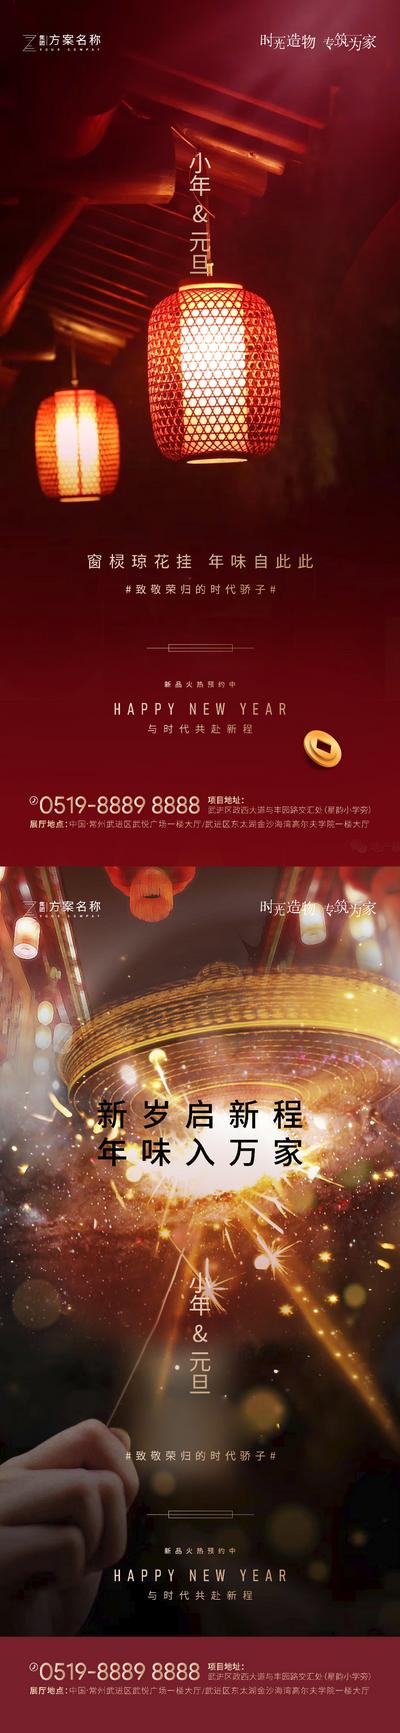 南门网 海报 房地产 公历节日 中国传统节日 小年 元旦 灯笼 烟花